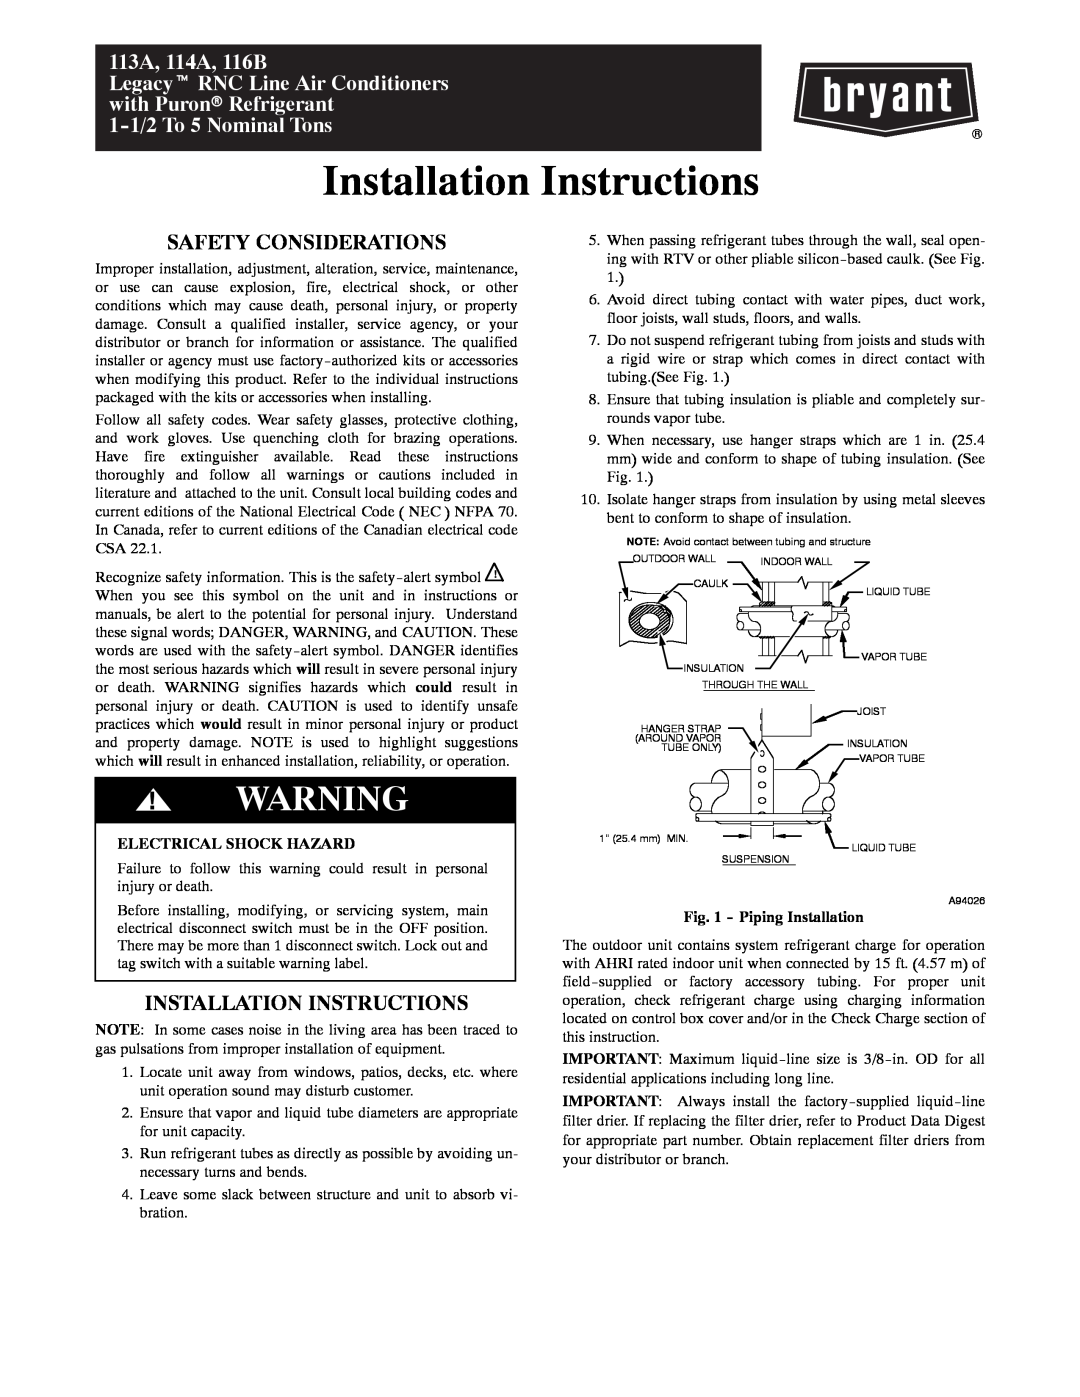 Bryant H3A installation instructions Safety Considerations, Installation Instructions, Electrical Shock Hazard 